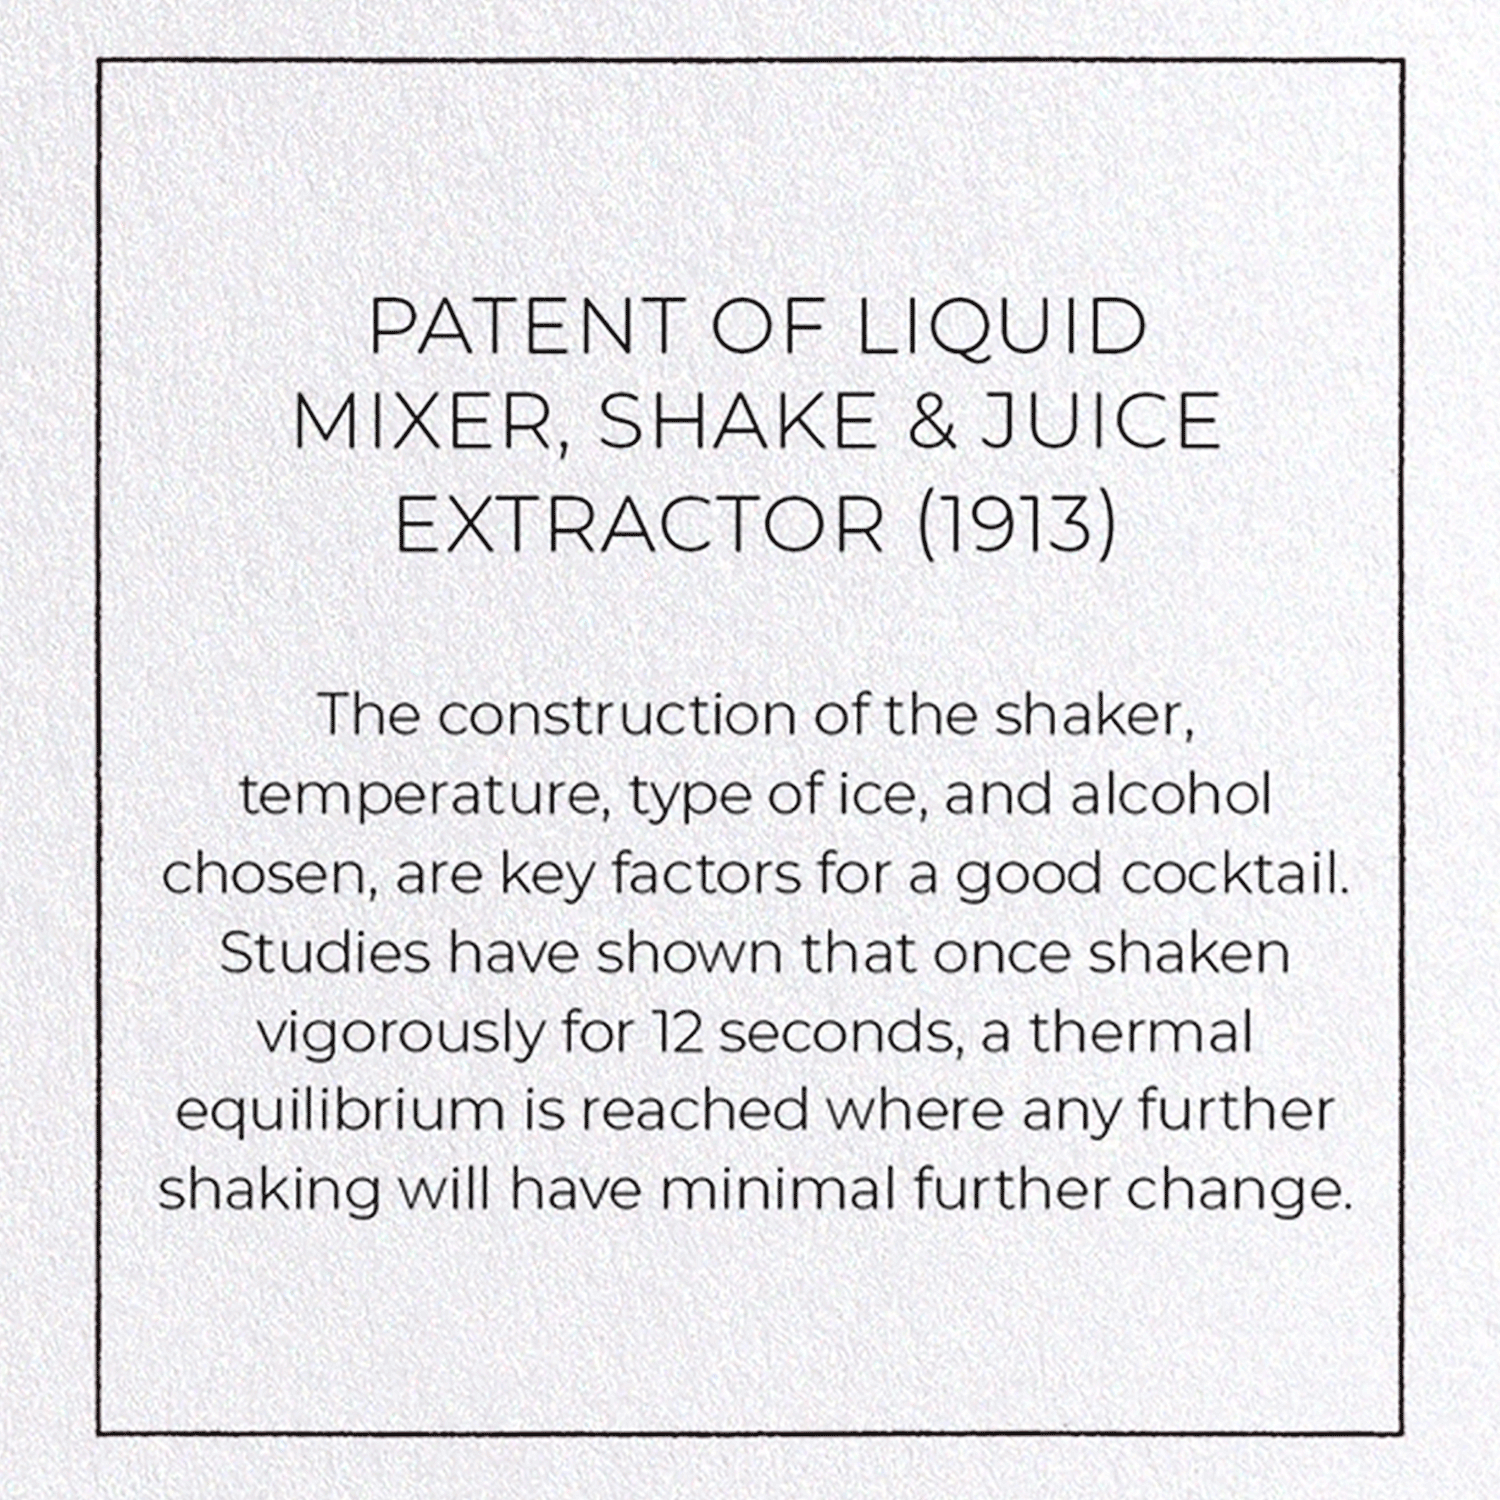 PATENT OF LIQUID MIXER, SHAKE & JUICE EXTRACTOR (1913)